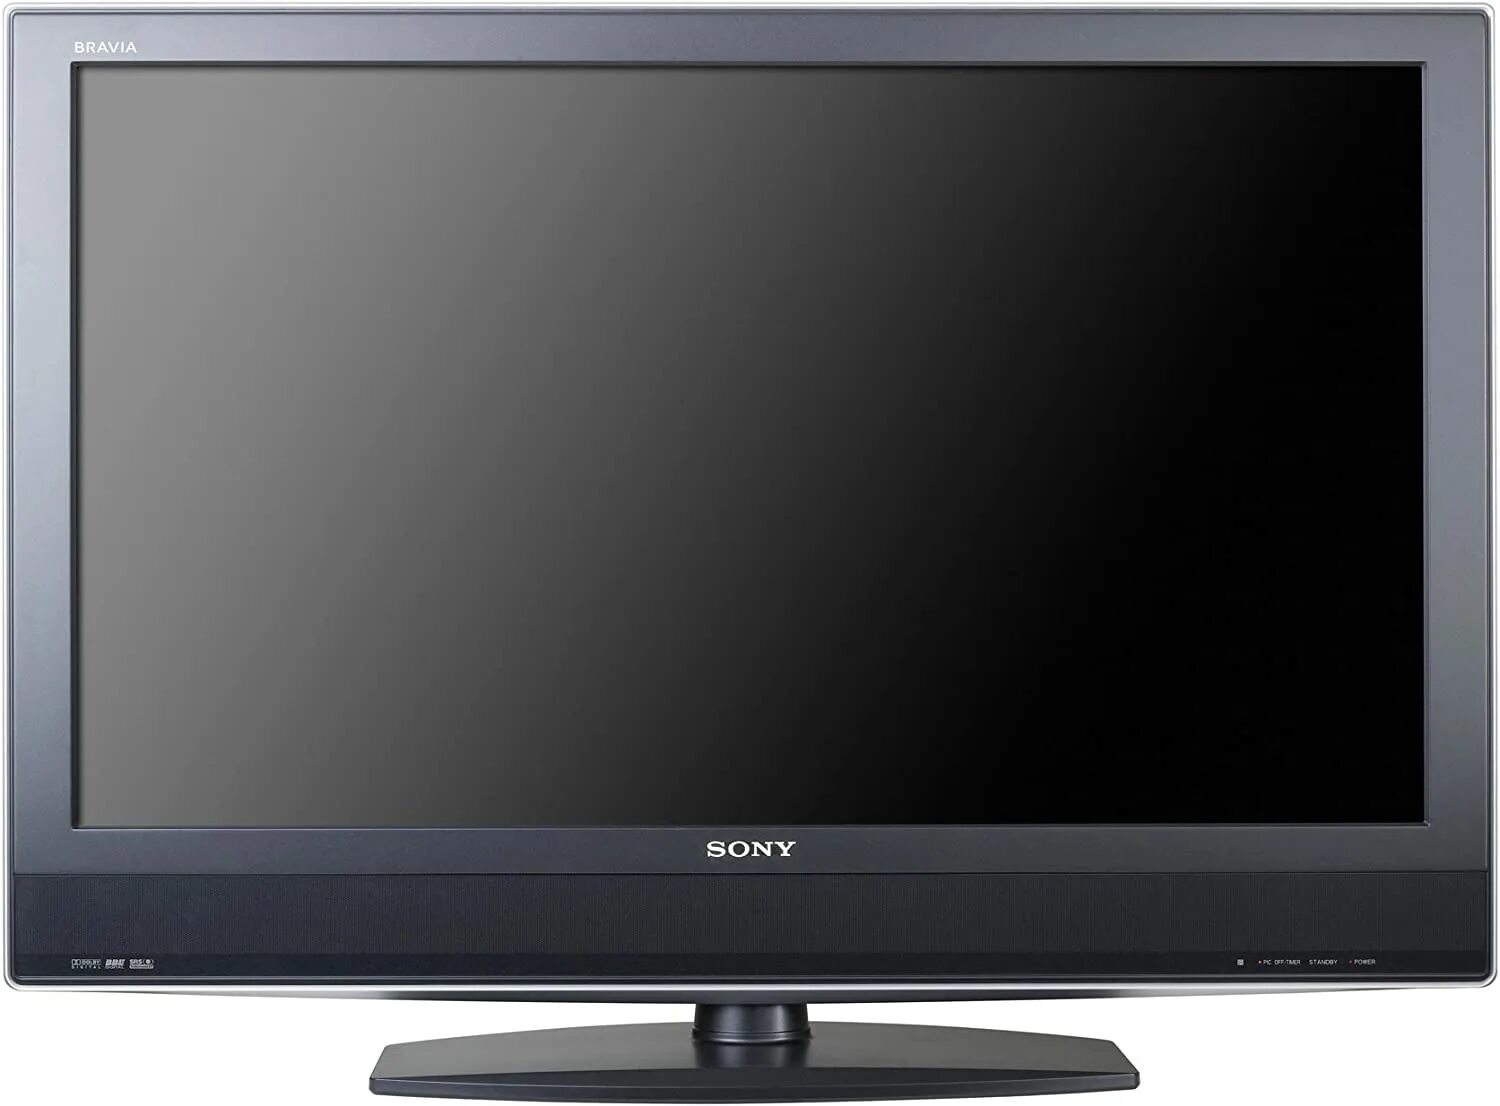 Телевизор sony бравиа. Sony Bravia KDL-32s2010. Телевизор Sony Bravia 2010. Сони бравиа 32 2010. Sony Bravia 32 LCD.